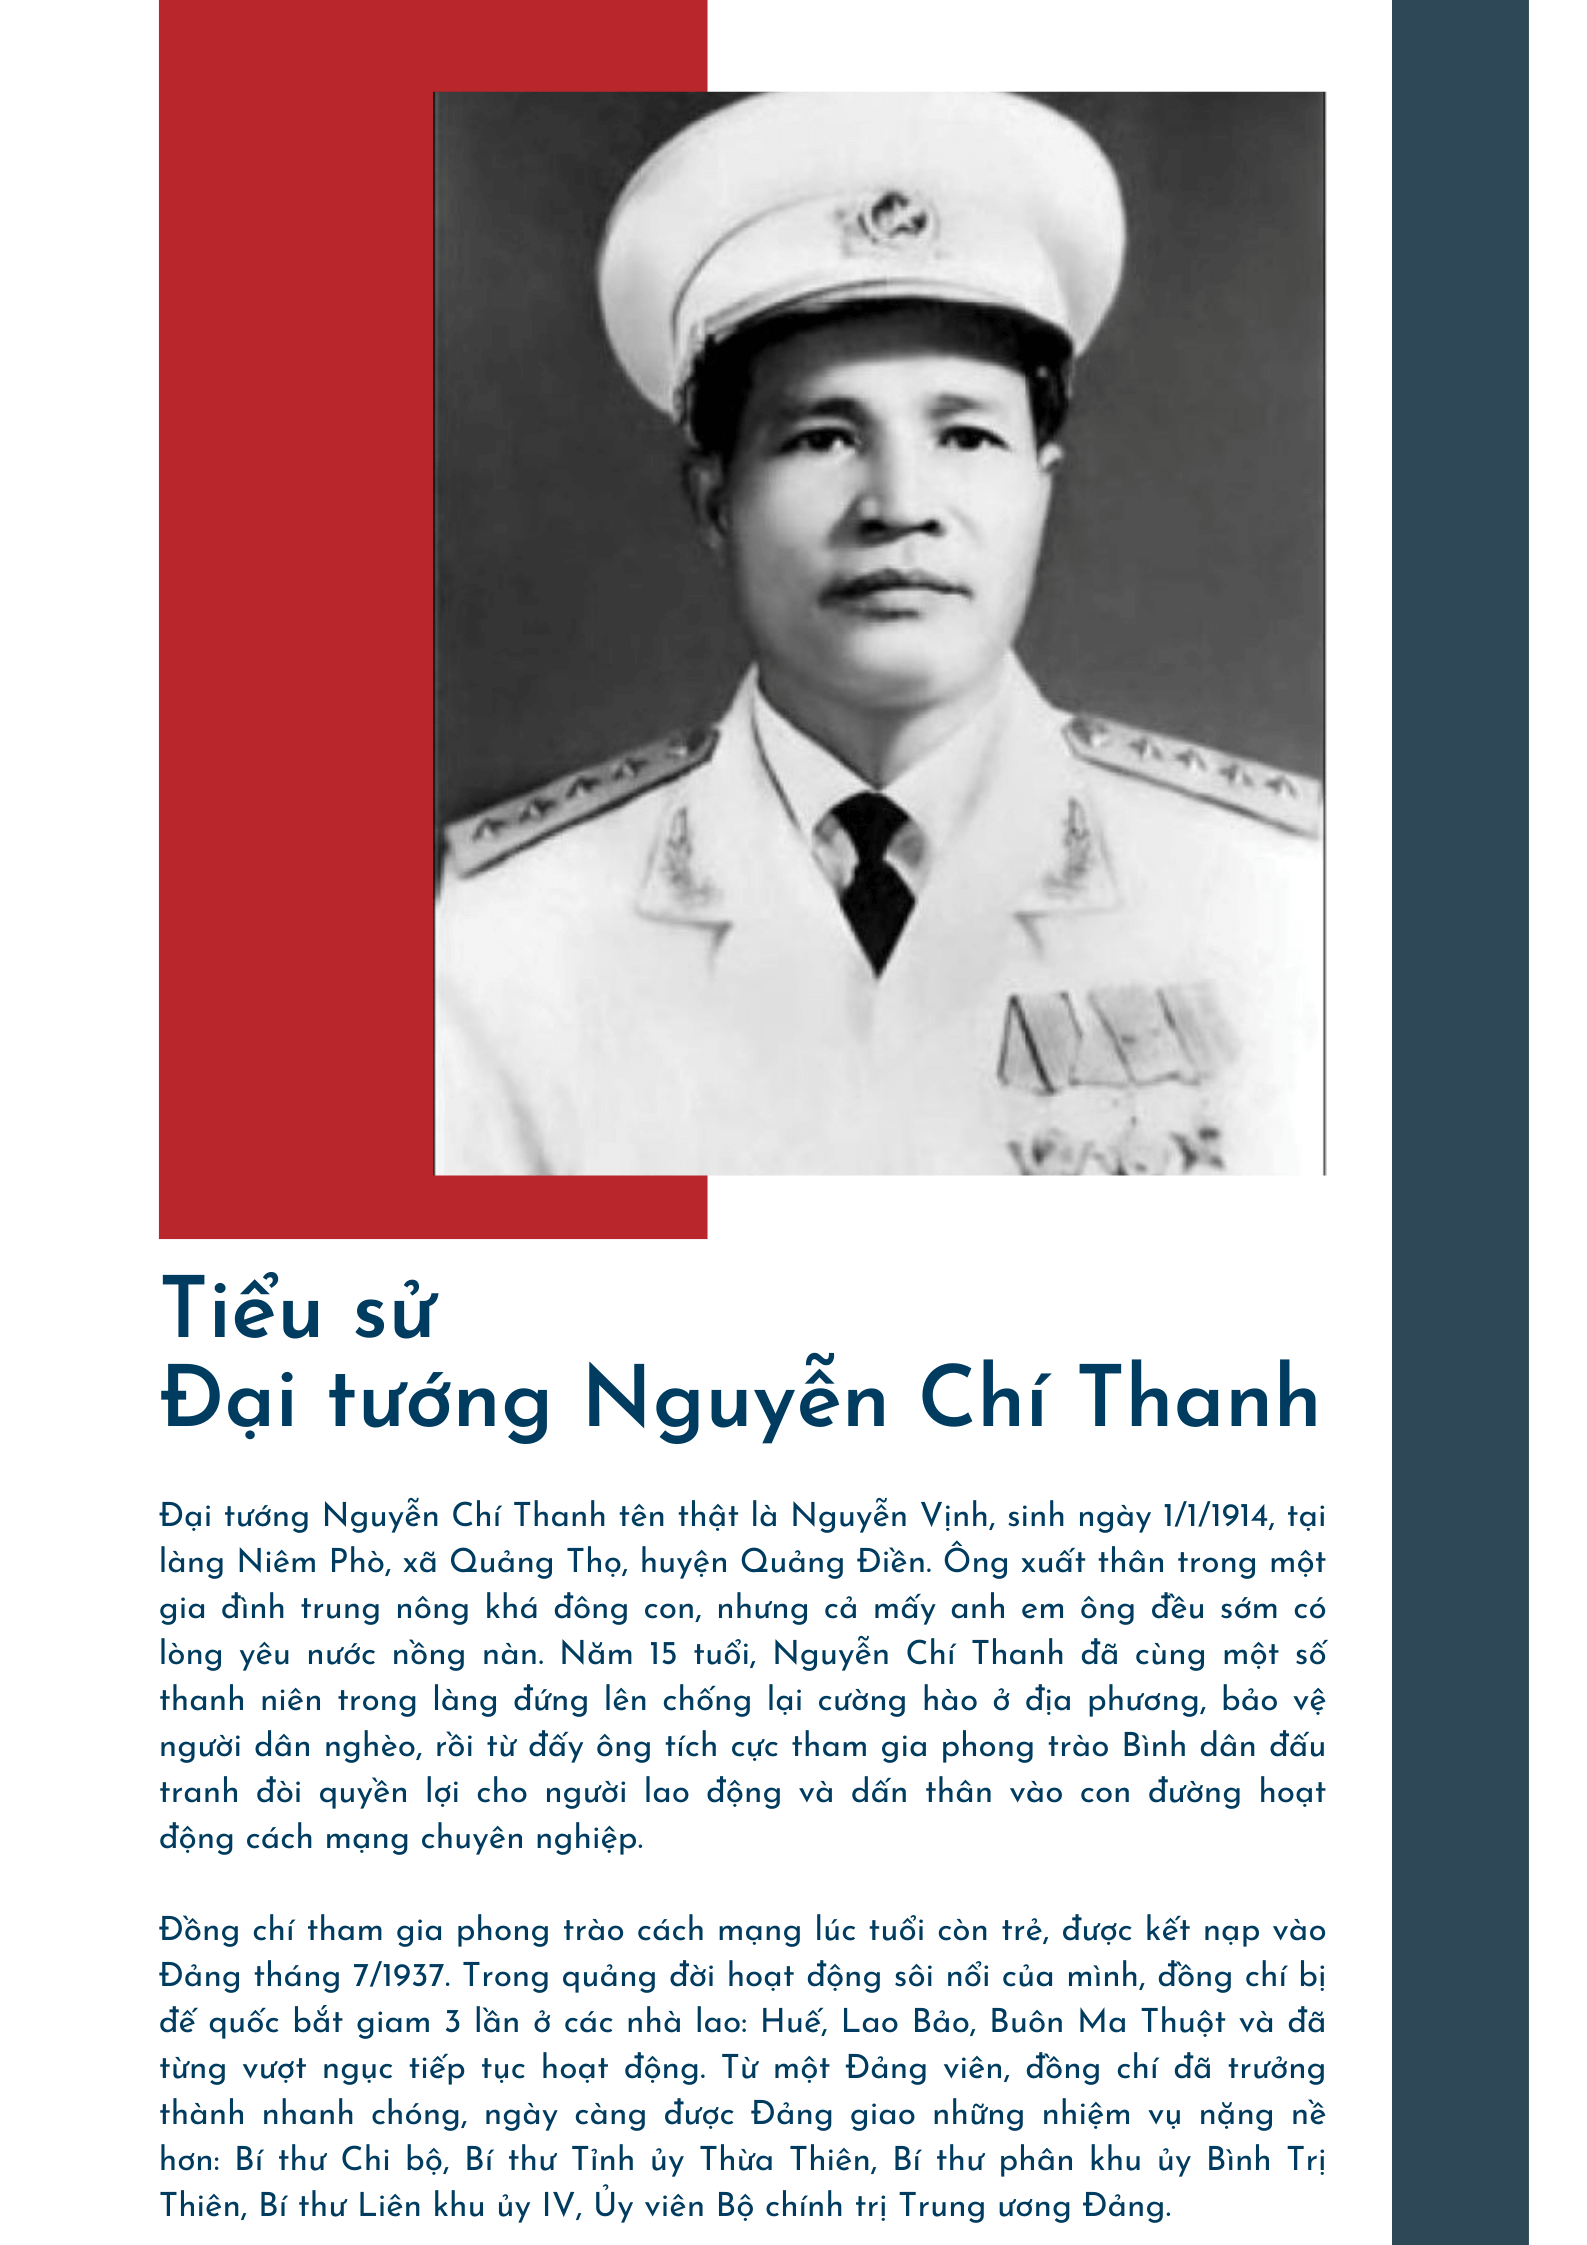 Di tích Khu lưu niệm Đại tướng Nguyễn Chí Thanh ở tại thôn Niêm Phò, xã Quảng Thọ, huyện Quảng Điền, tỉnh Thừa Thiên Huế